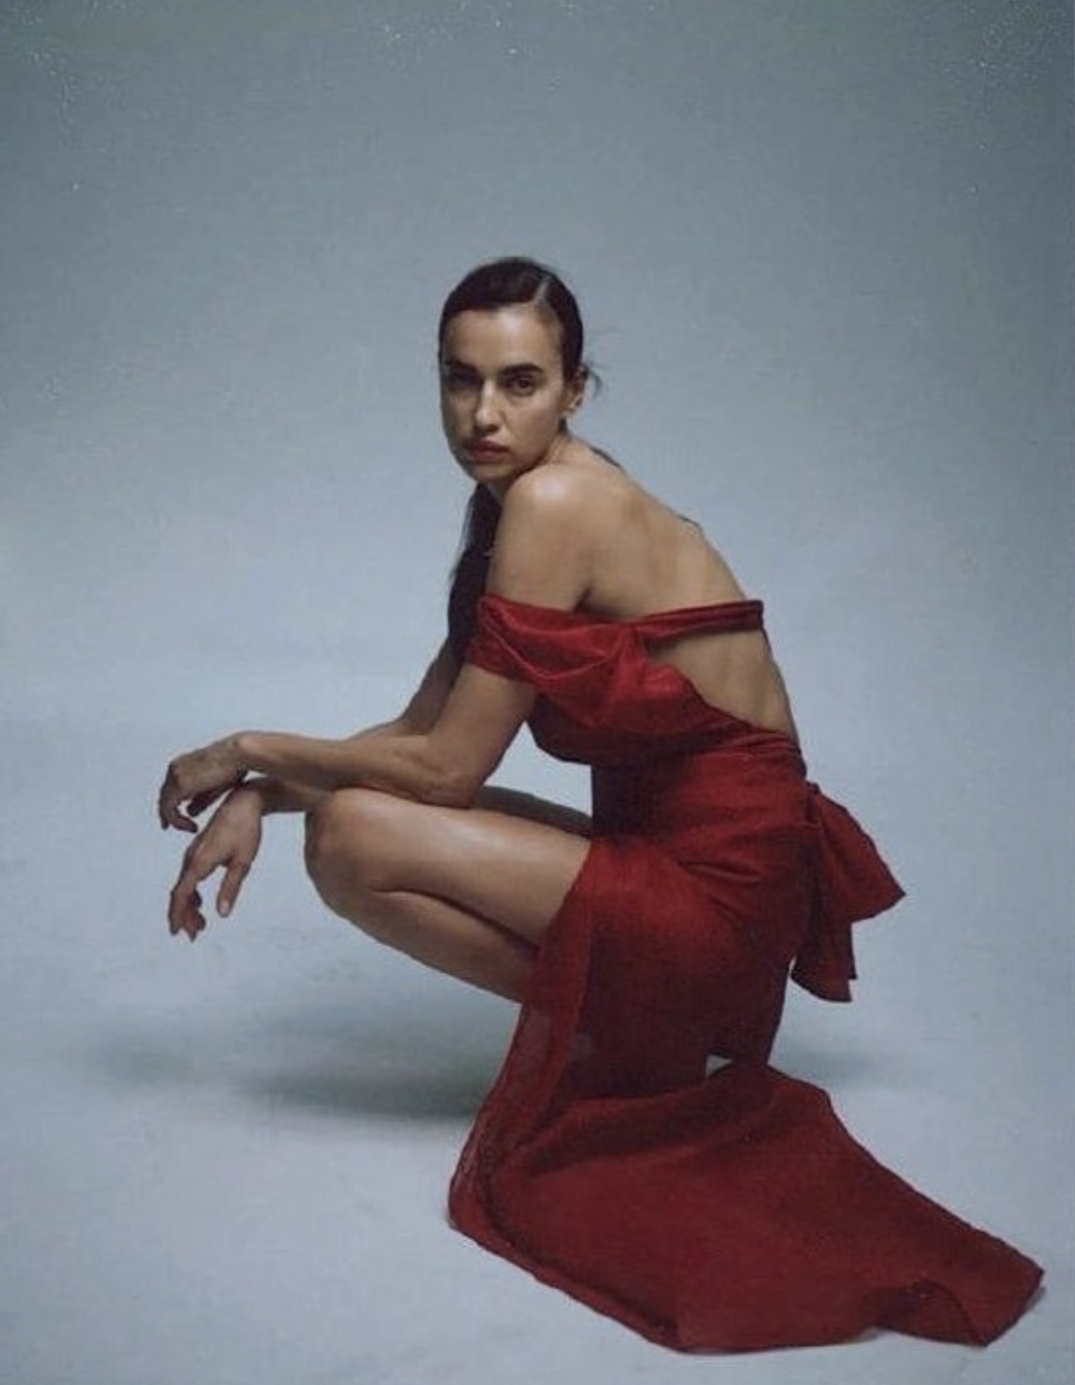 Ирина Шейк в фотосессии для февральского Vogue Arabia